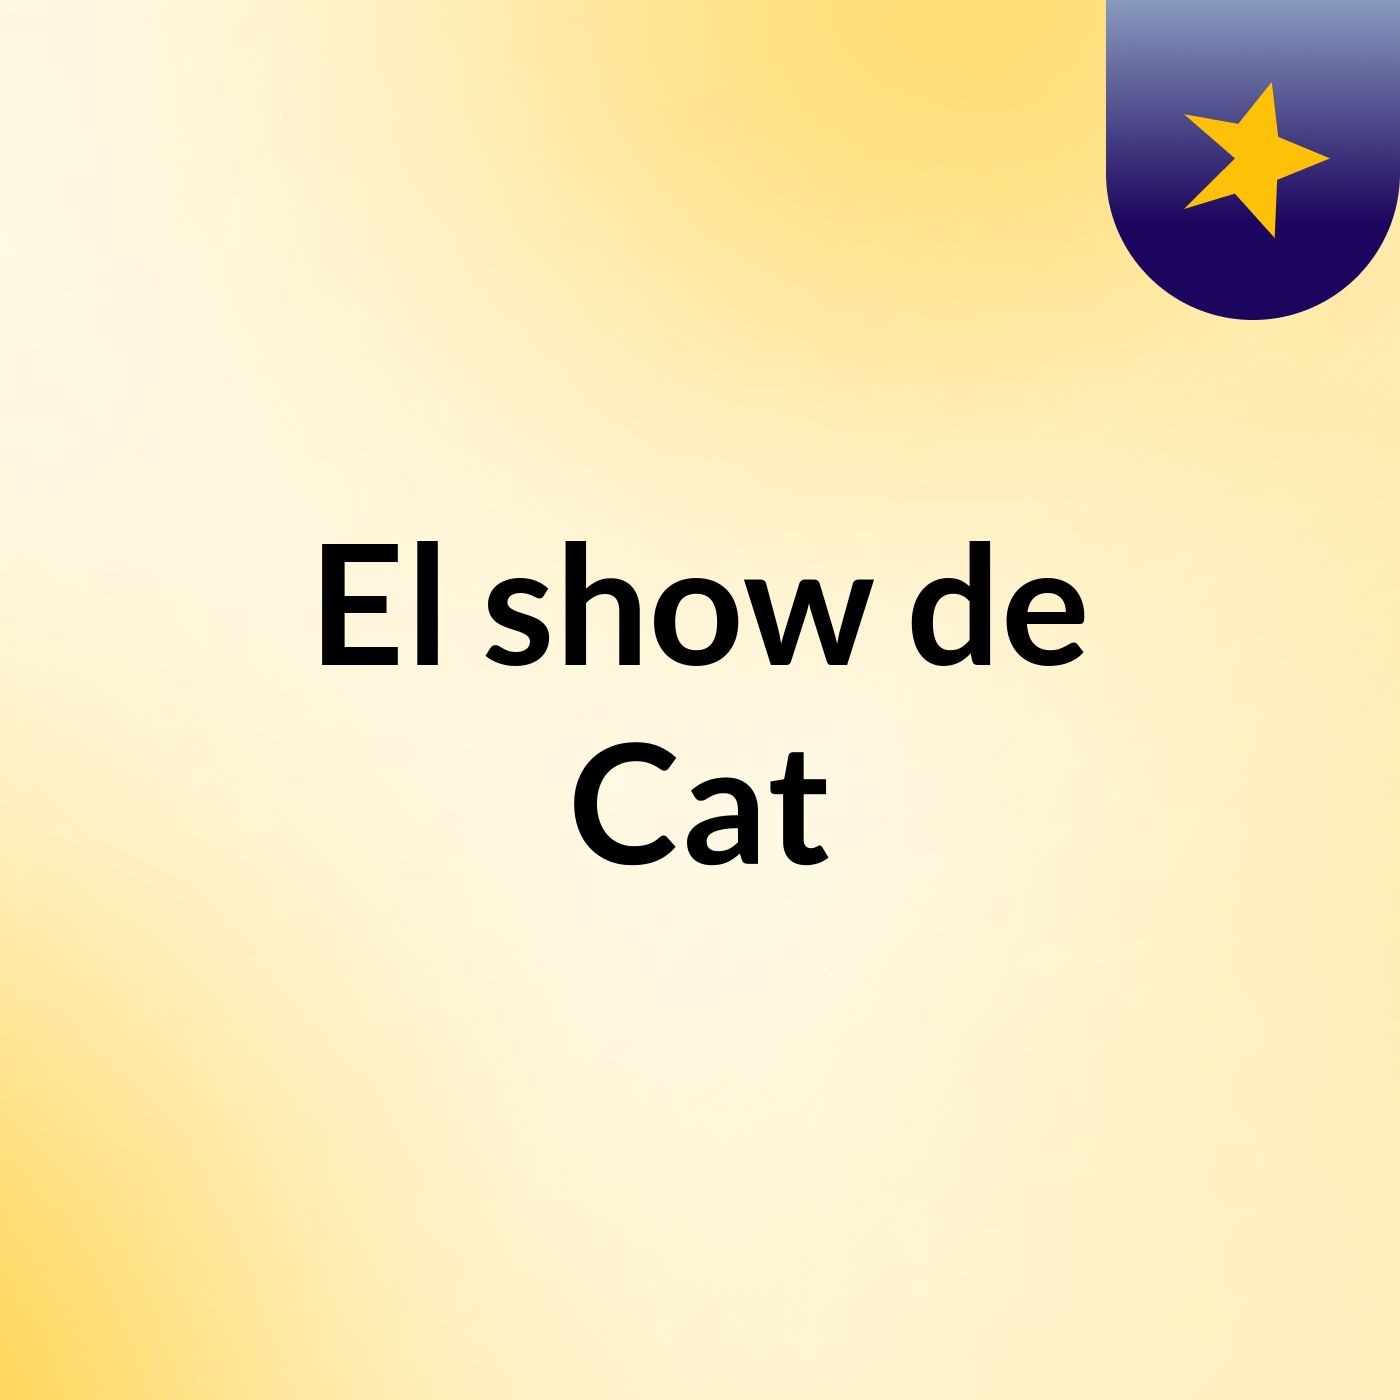 El show de Cat